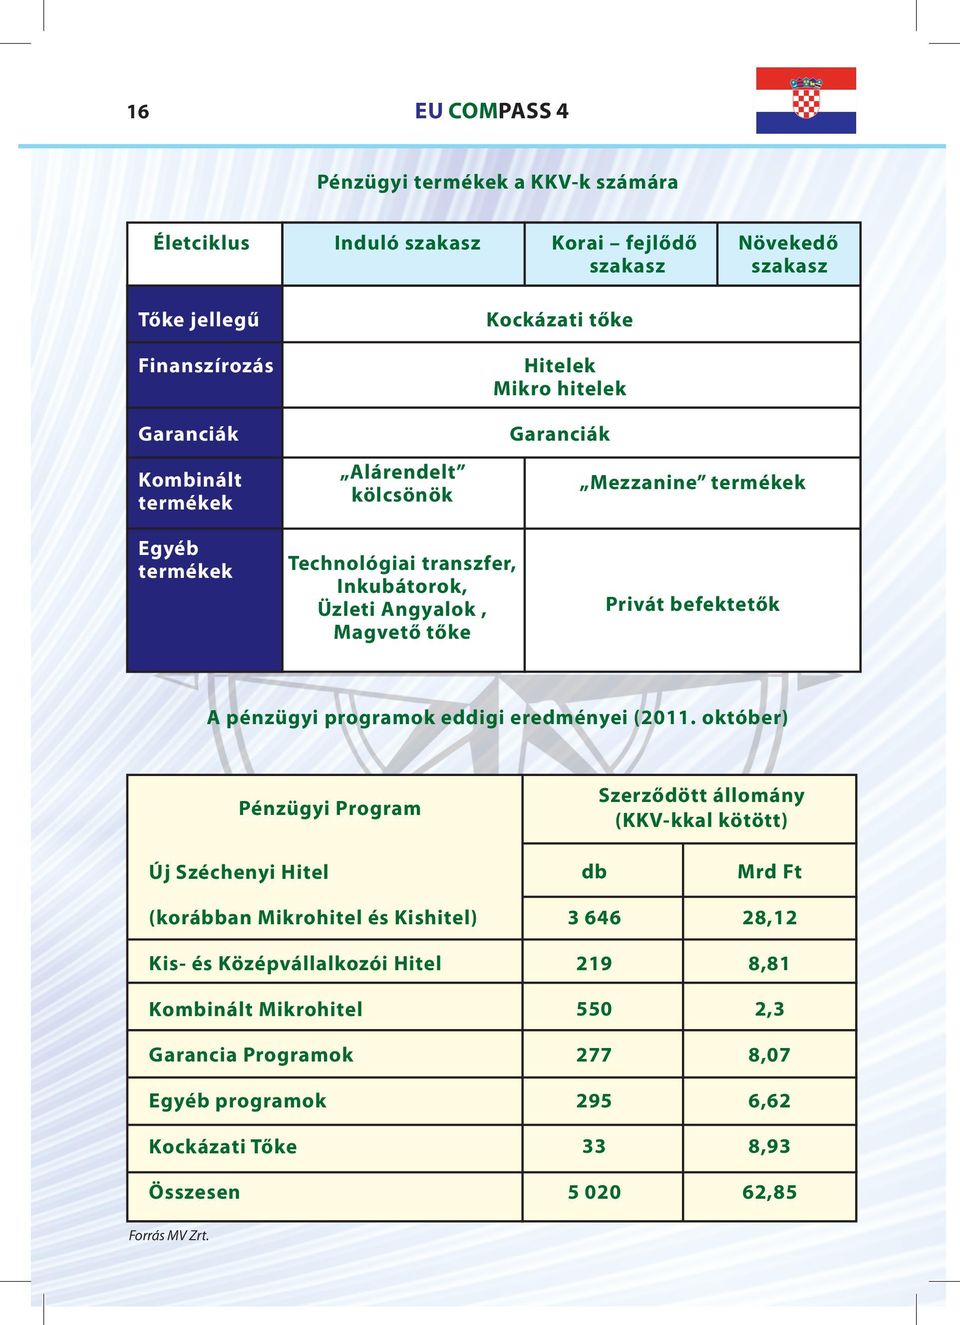 pénzügyi programok eddigi eredményei (2011.